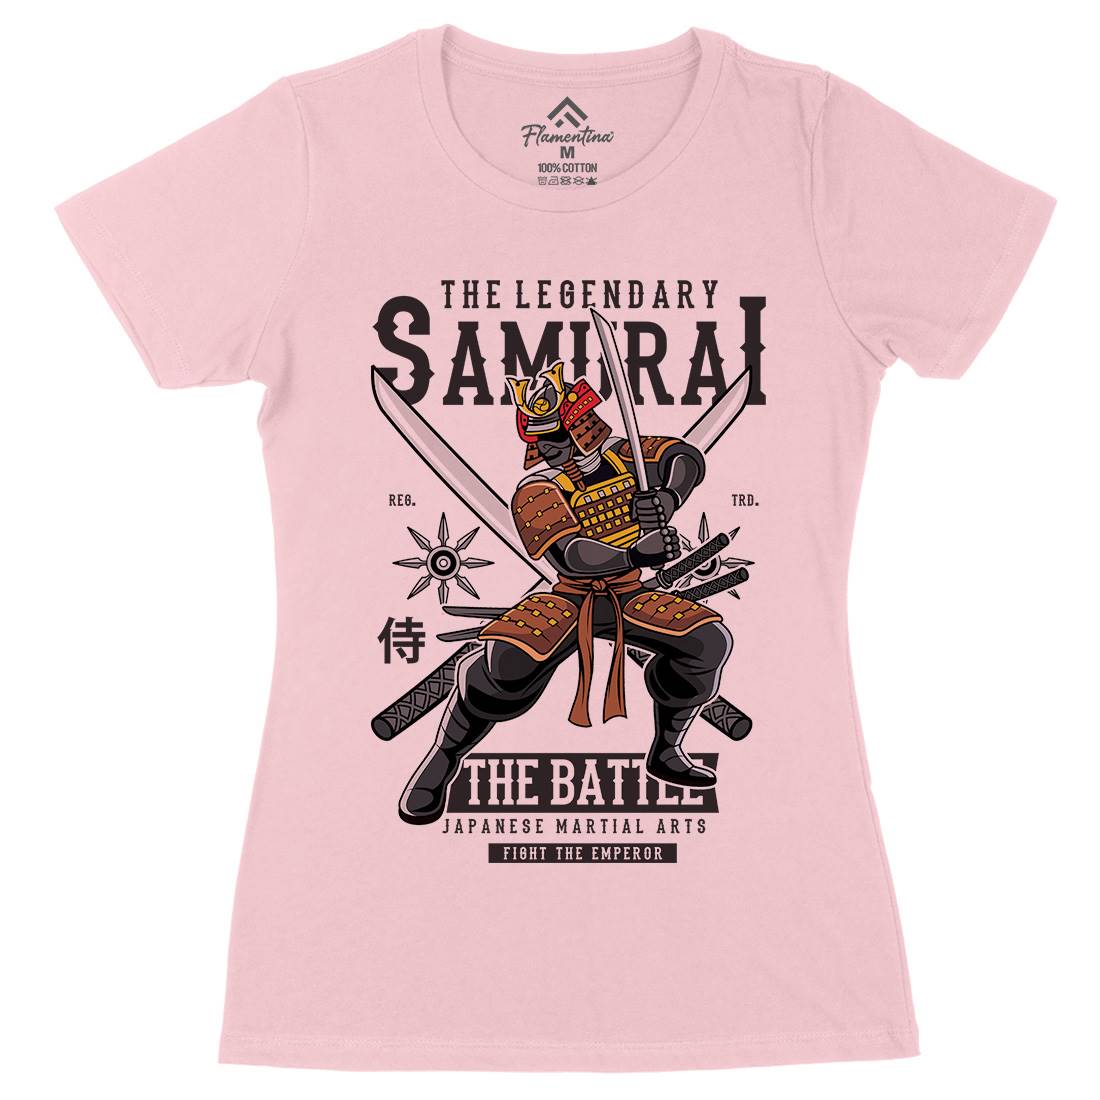 Samurai Womens Organic Crew Neck T-Shirt Warriors C430